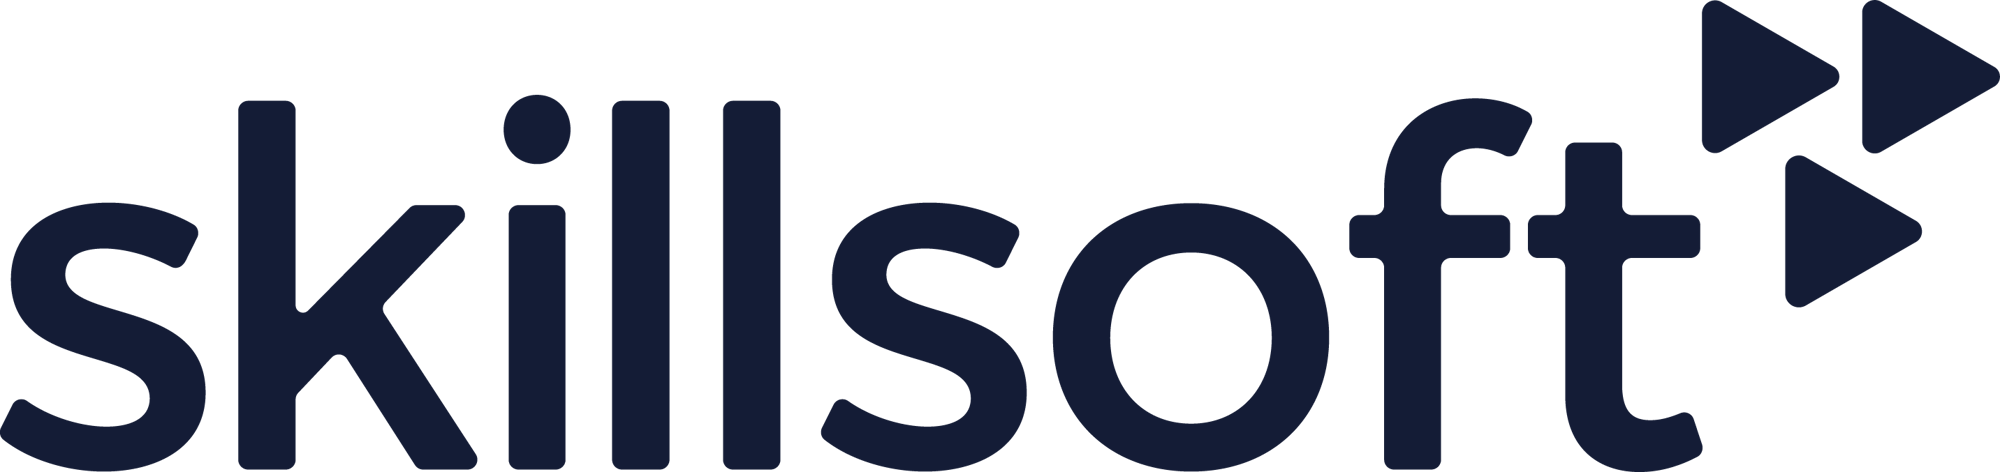 skillsoft-navy-logo